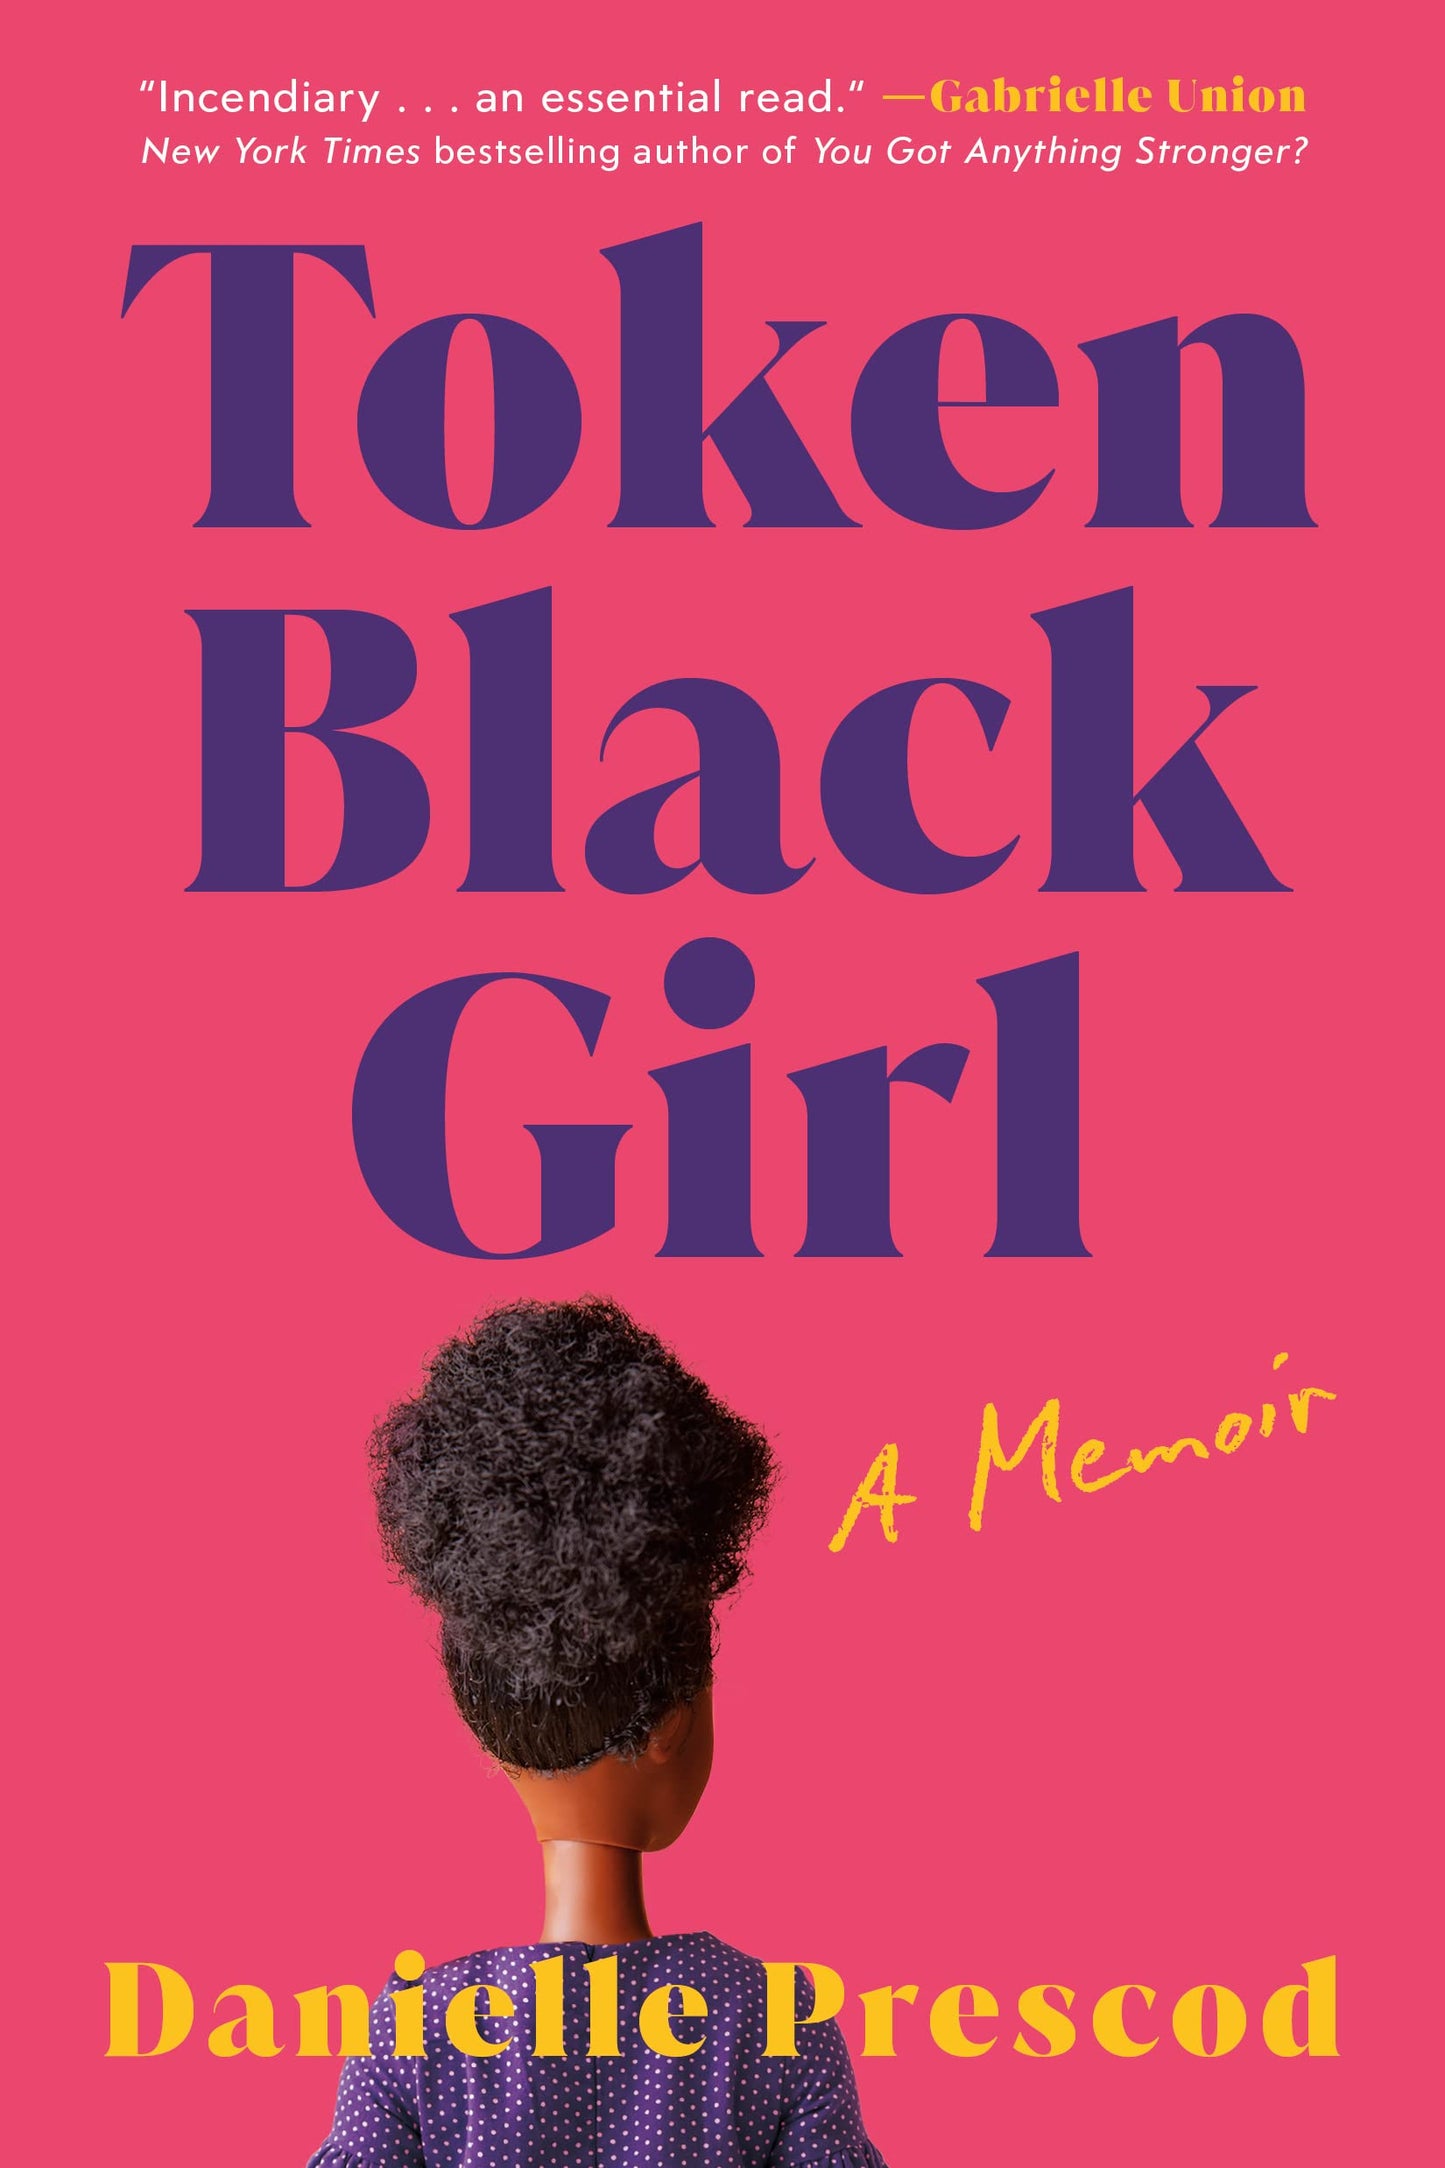 Token Black Girl // A Memoir